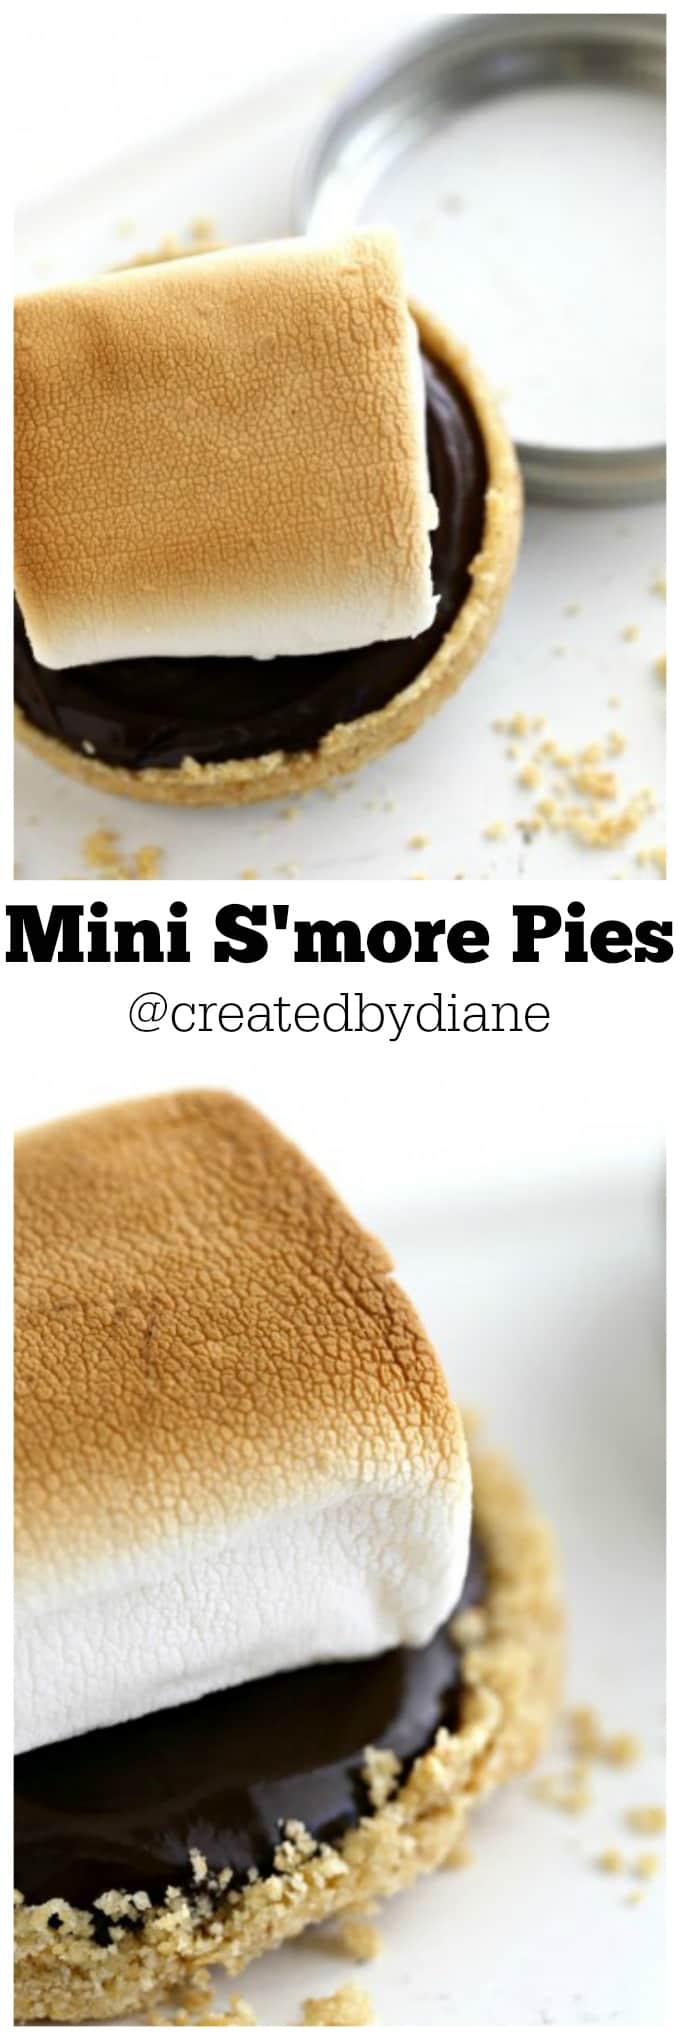 Mini S'more Pies @createdbydiane